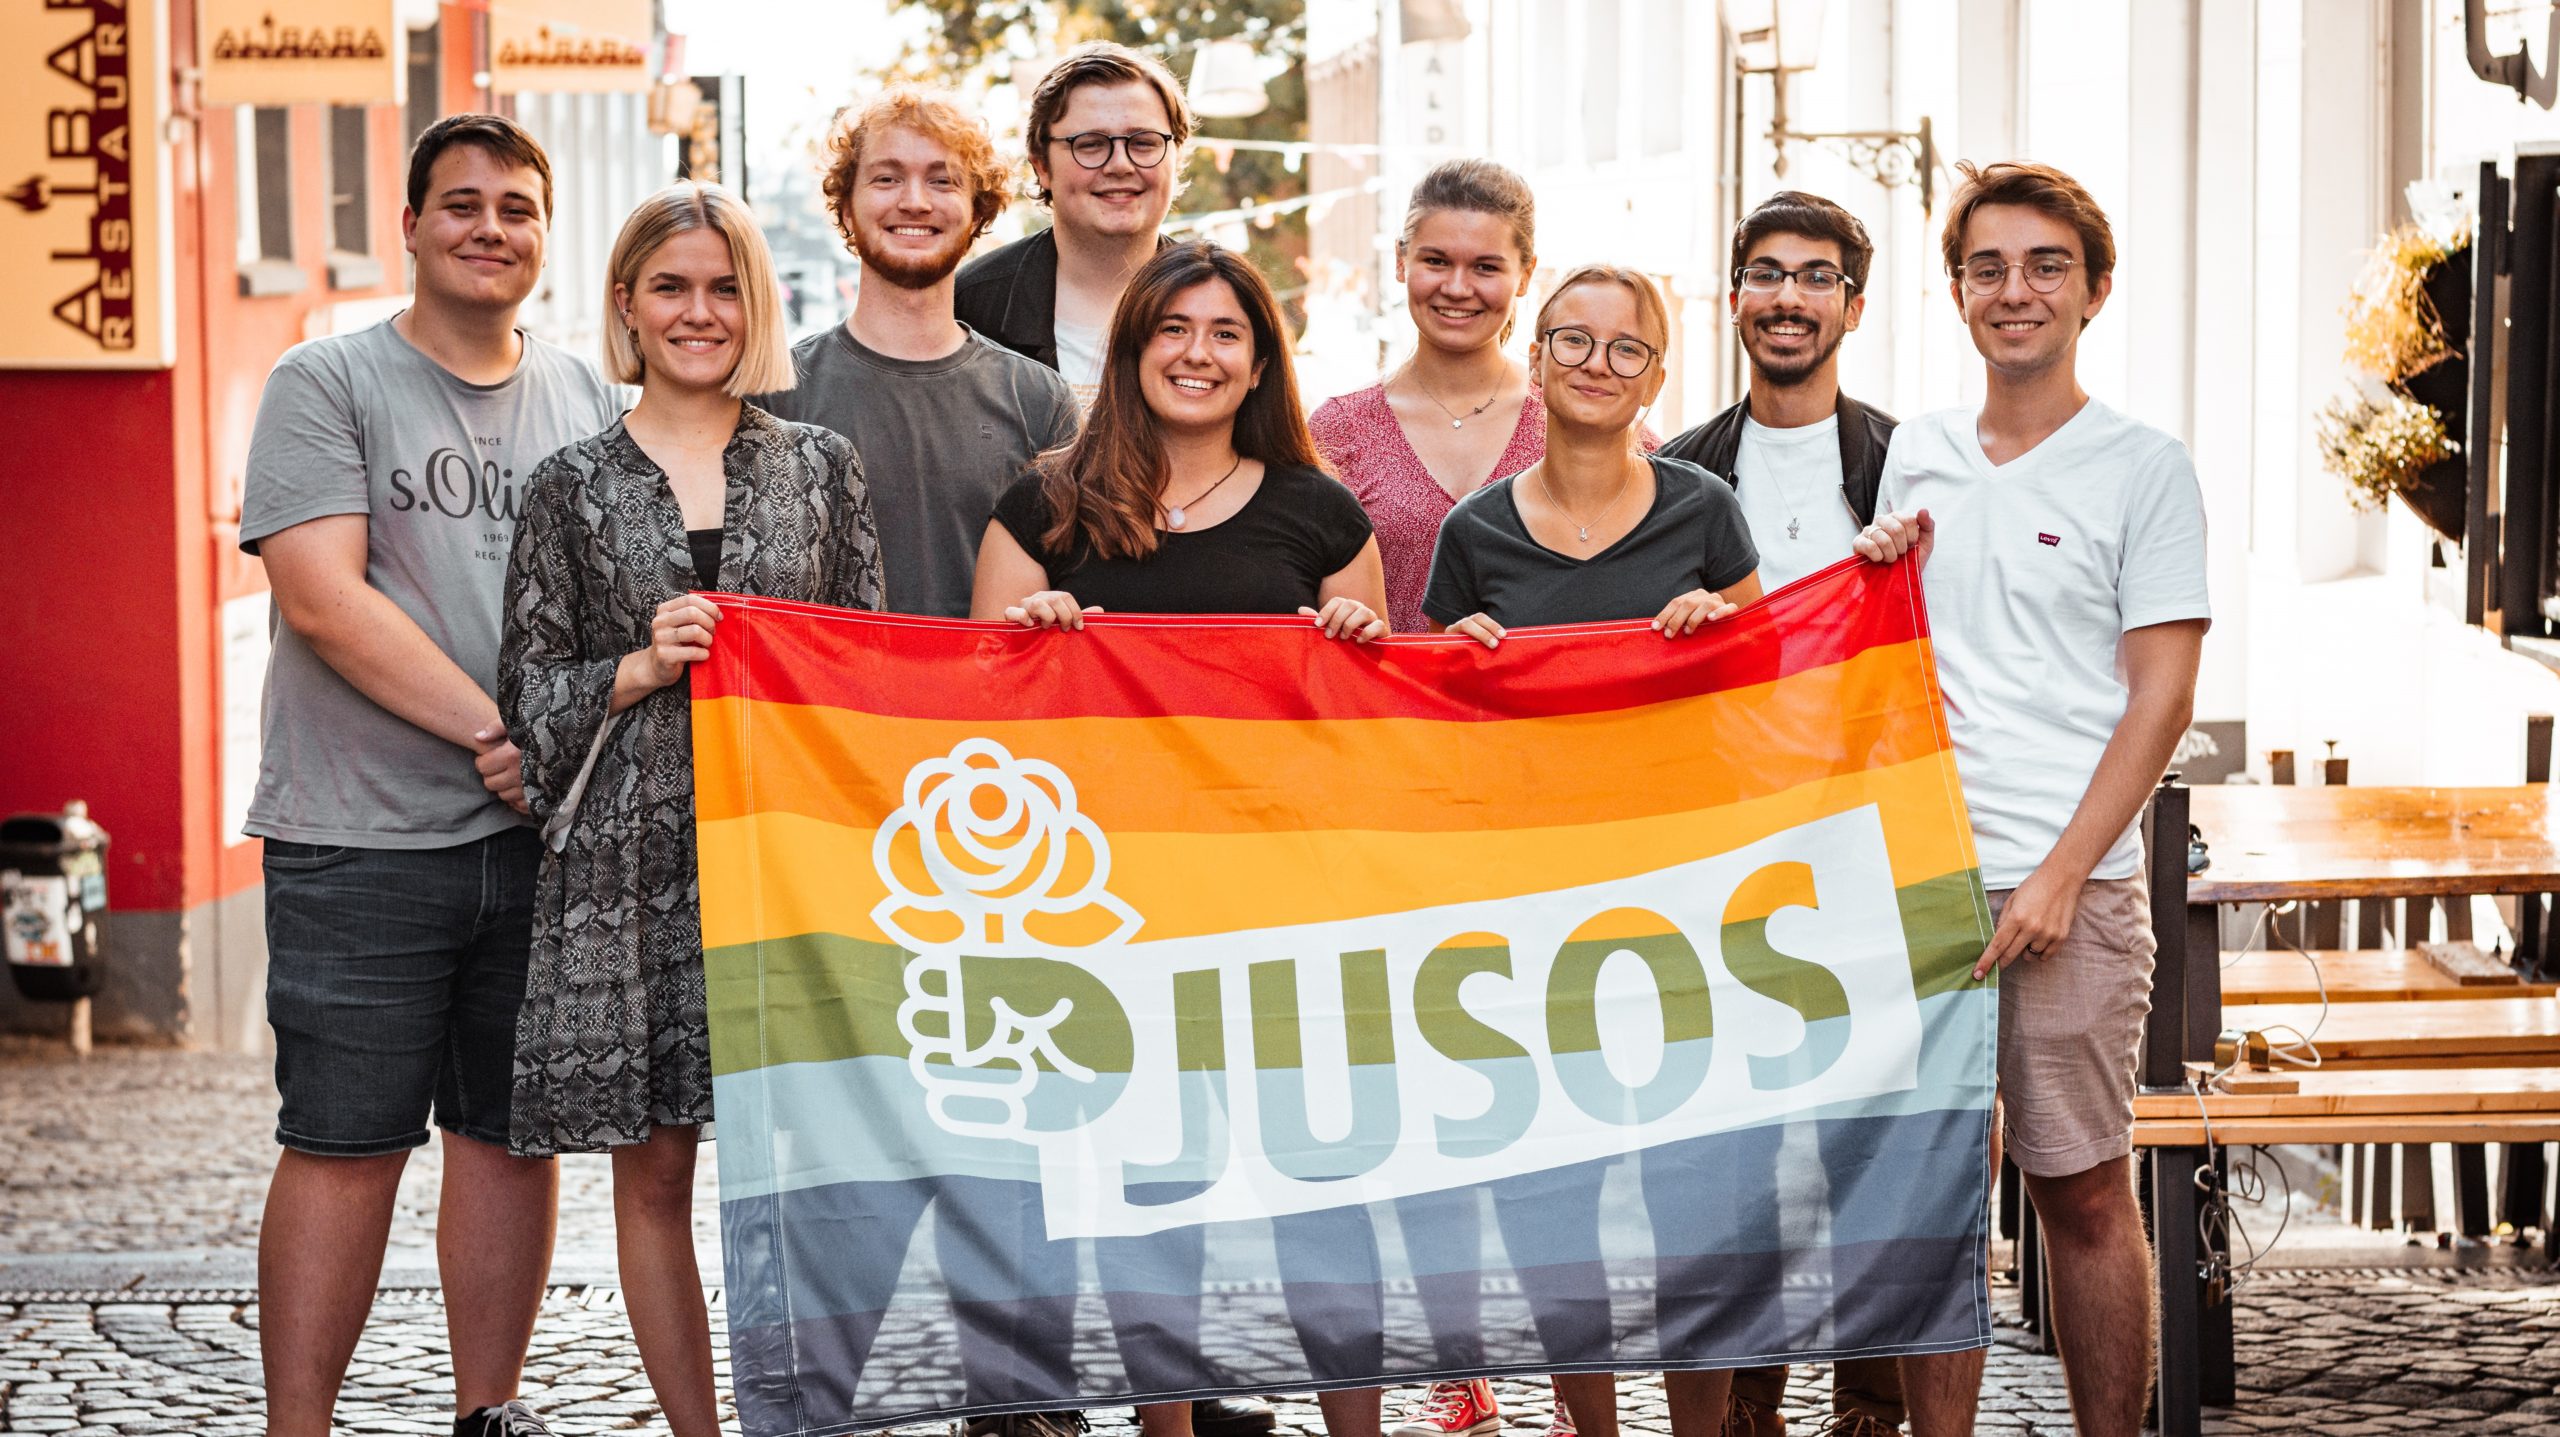 Bild, mit allen Vorstandsmitgliedern, auf dem sie eine Pride-Flagge halten. Auf der Pride-Flagge ist das Zeichen der Jusos abgedruckt.